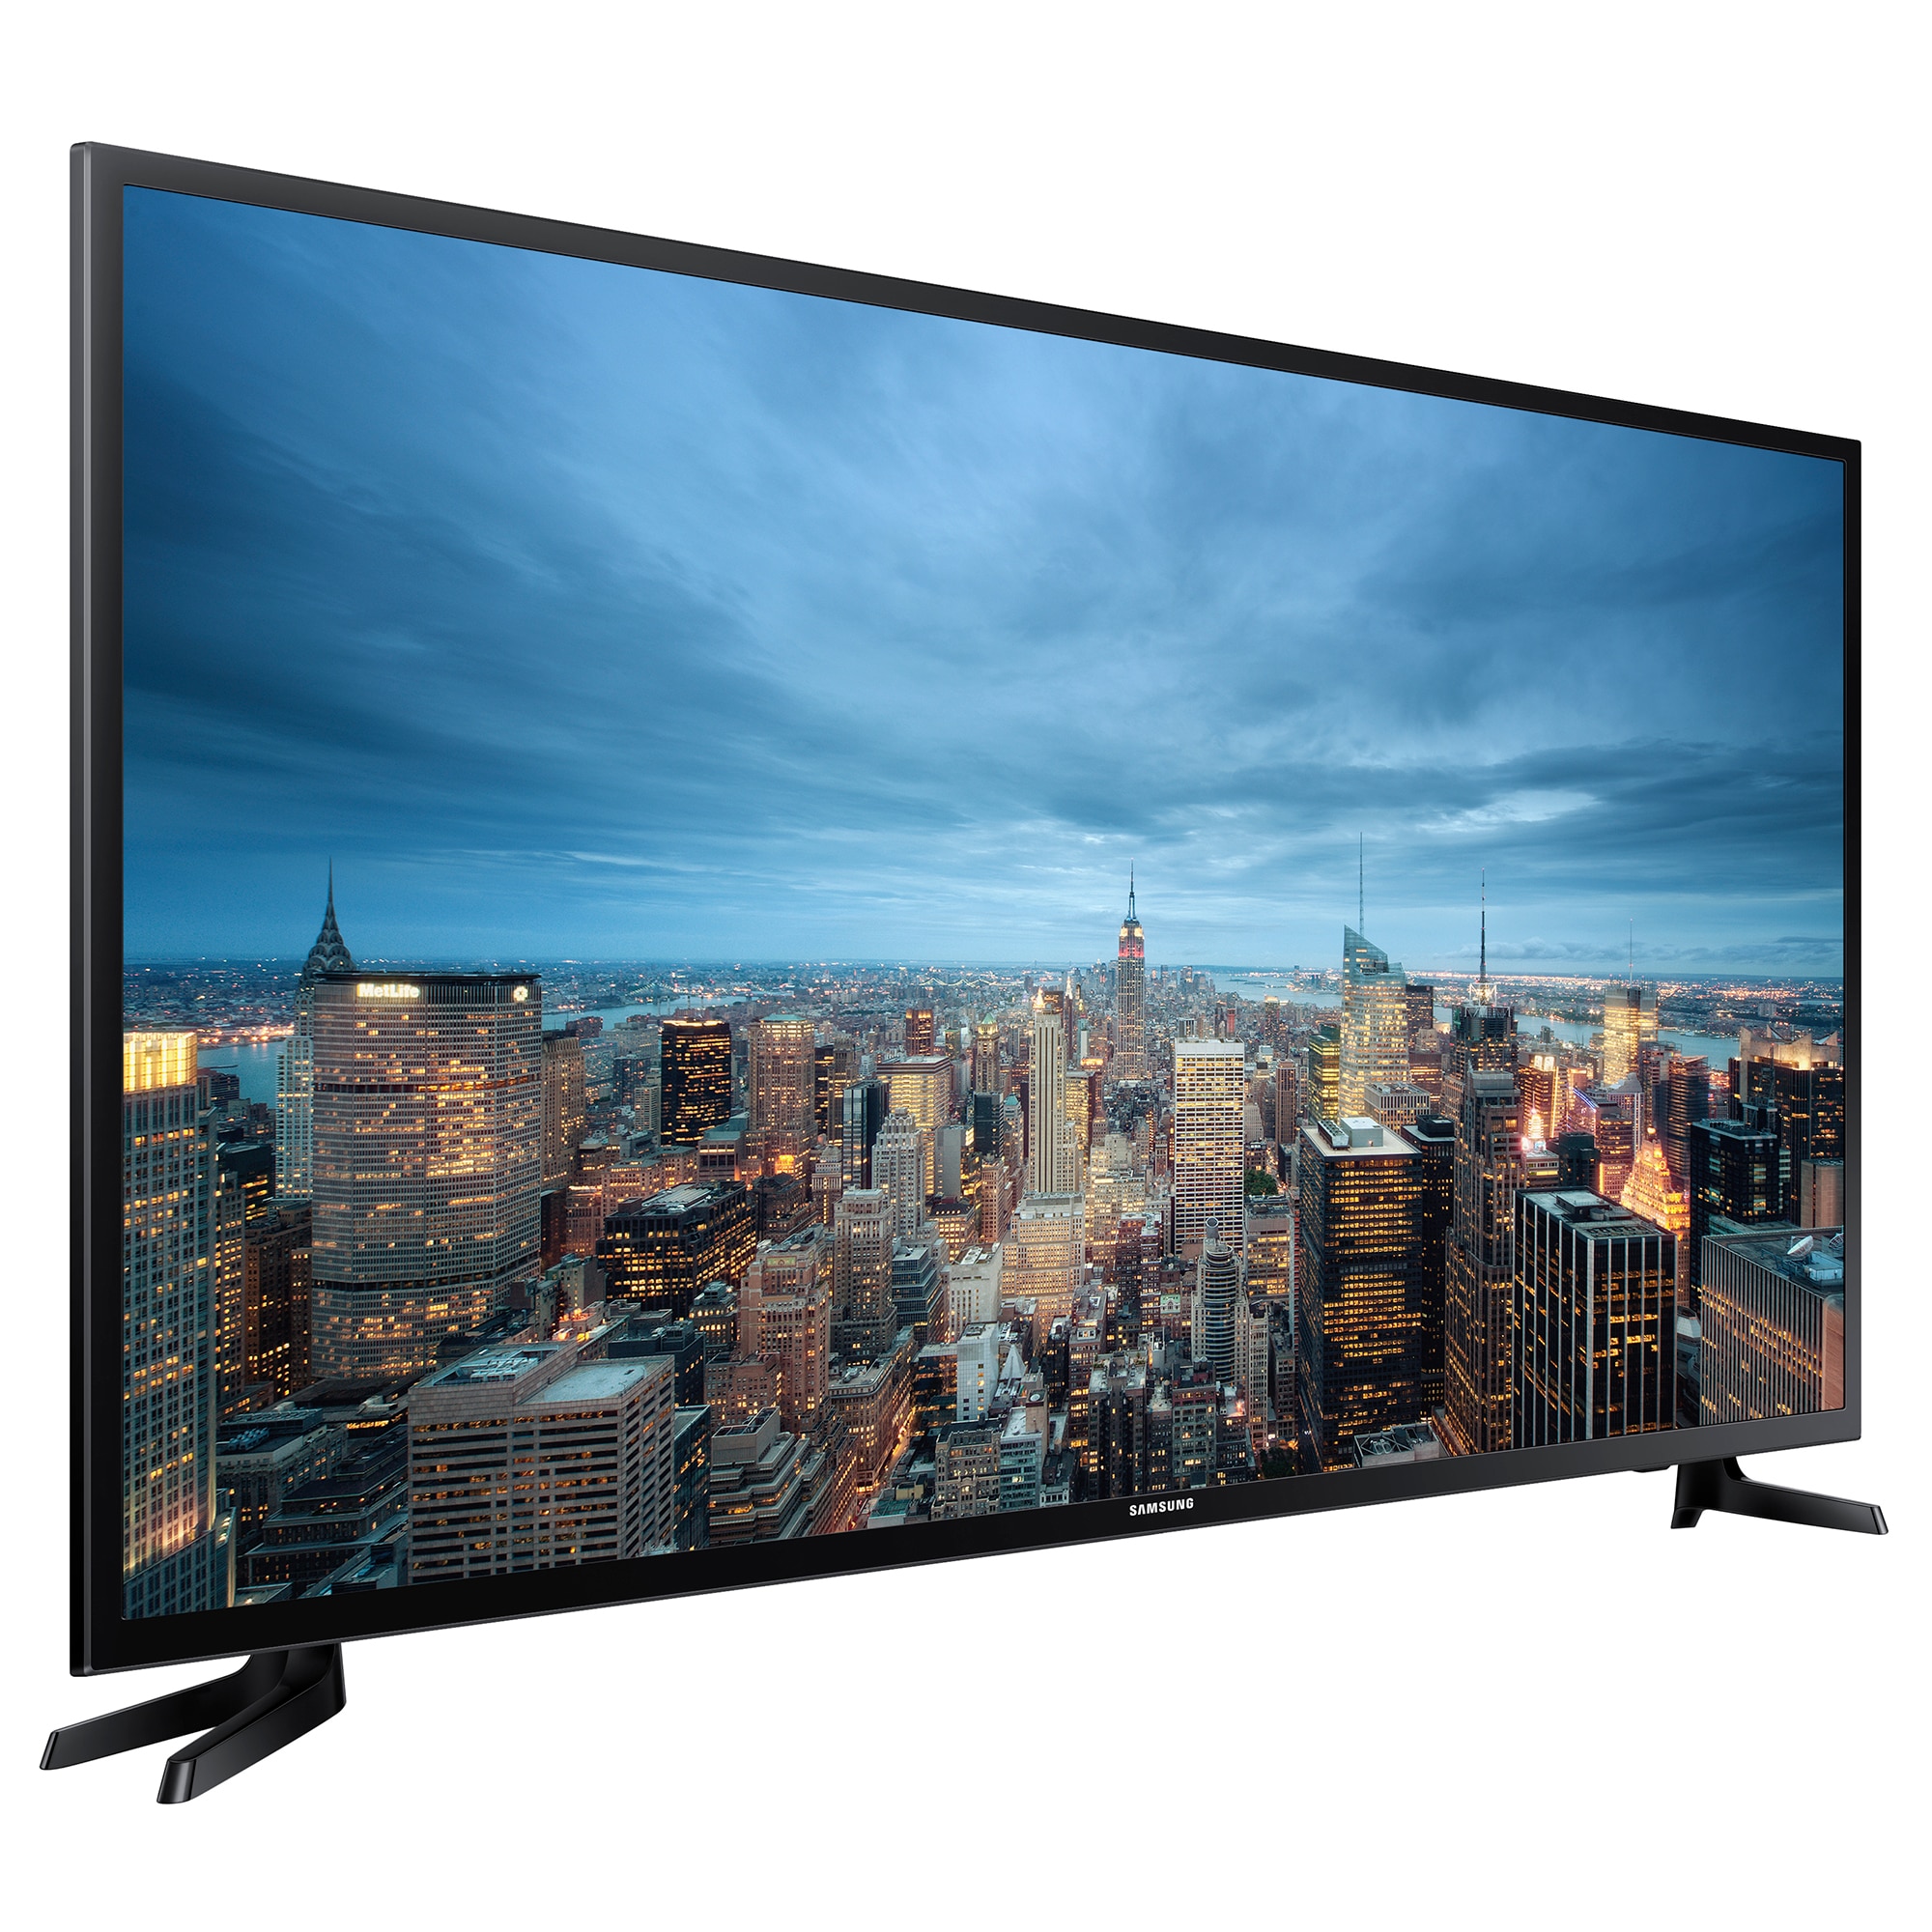 Жк 55 дюймов. Samsung ue55ju6530u. Samsung ue43ju6000u. Samsung Smart TV 40. Телевизор Samsung ue48ju6000u 48" (2015).